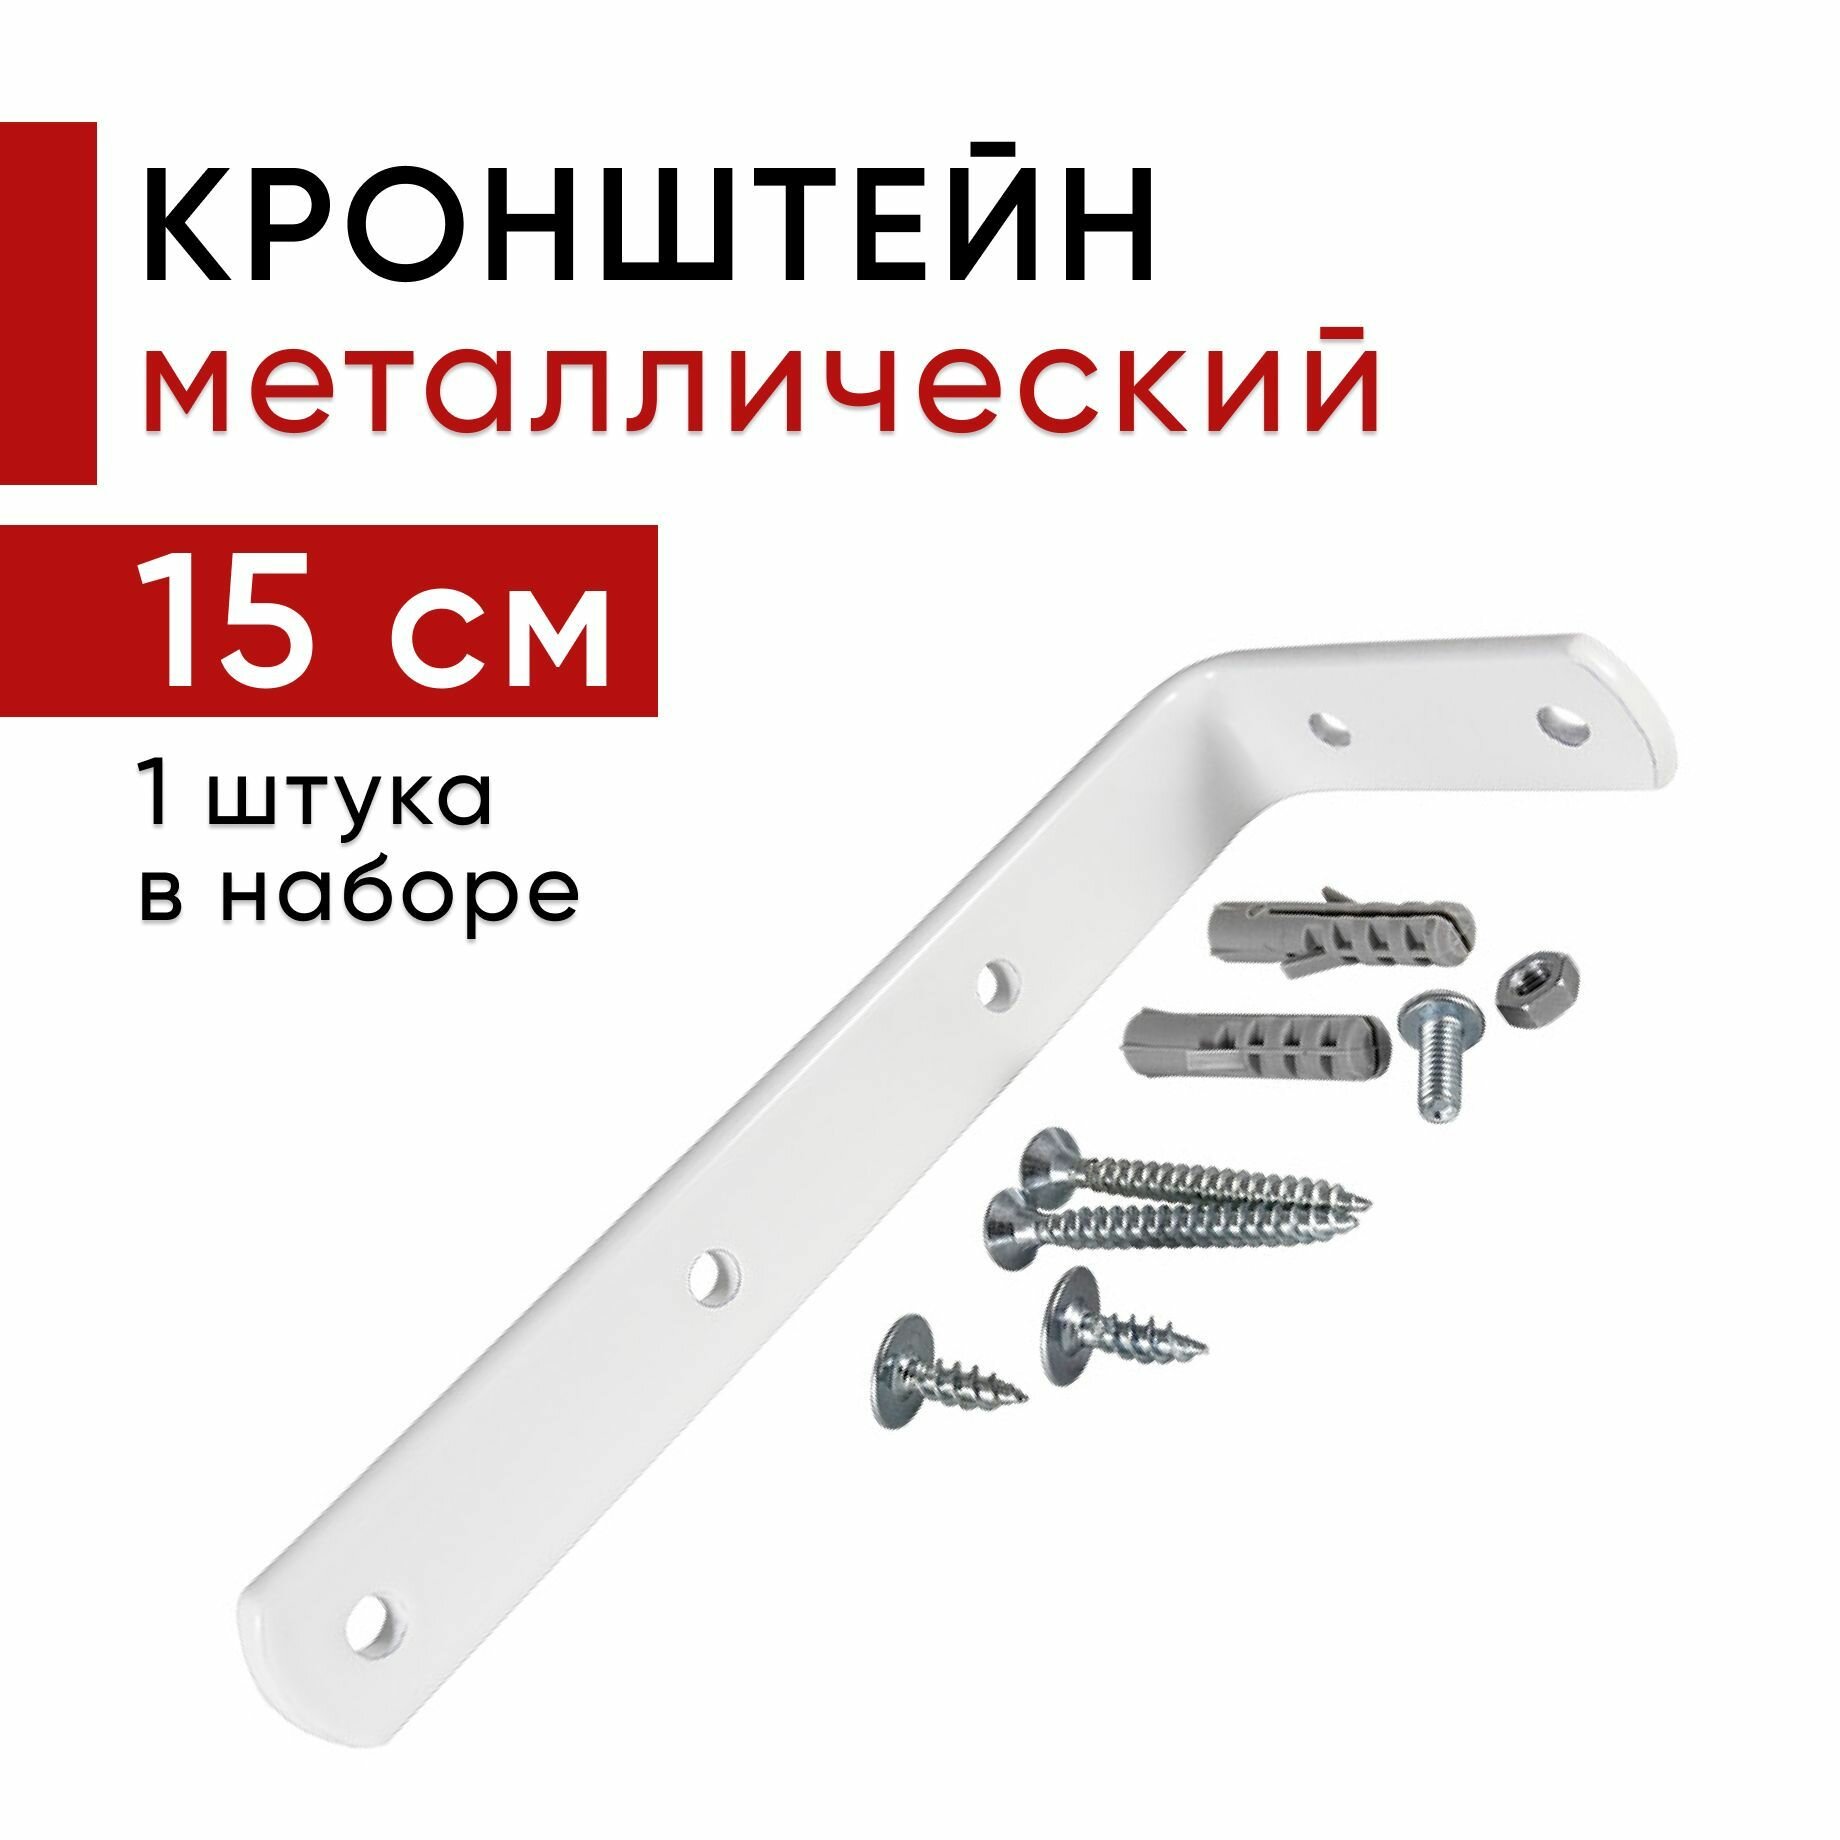 Металлический кронштейн для настенного крепления карниза вертикальных жалюзи 15см - 1шт